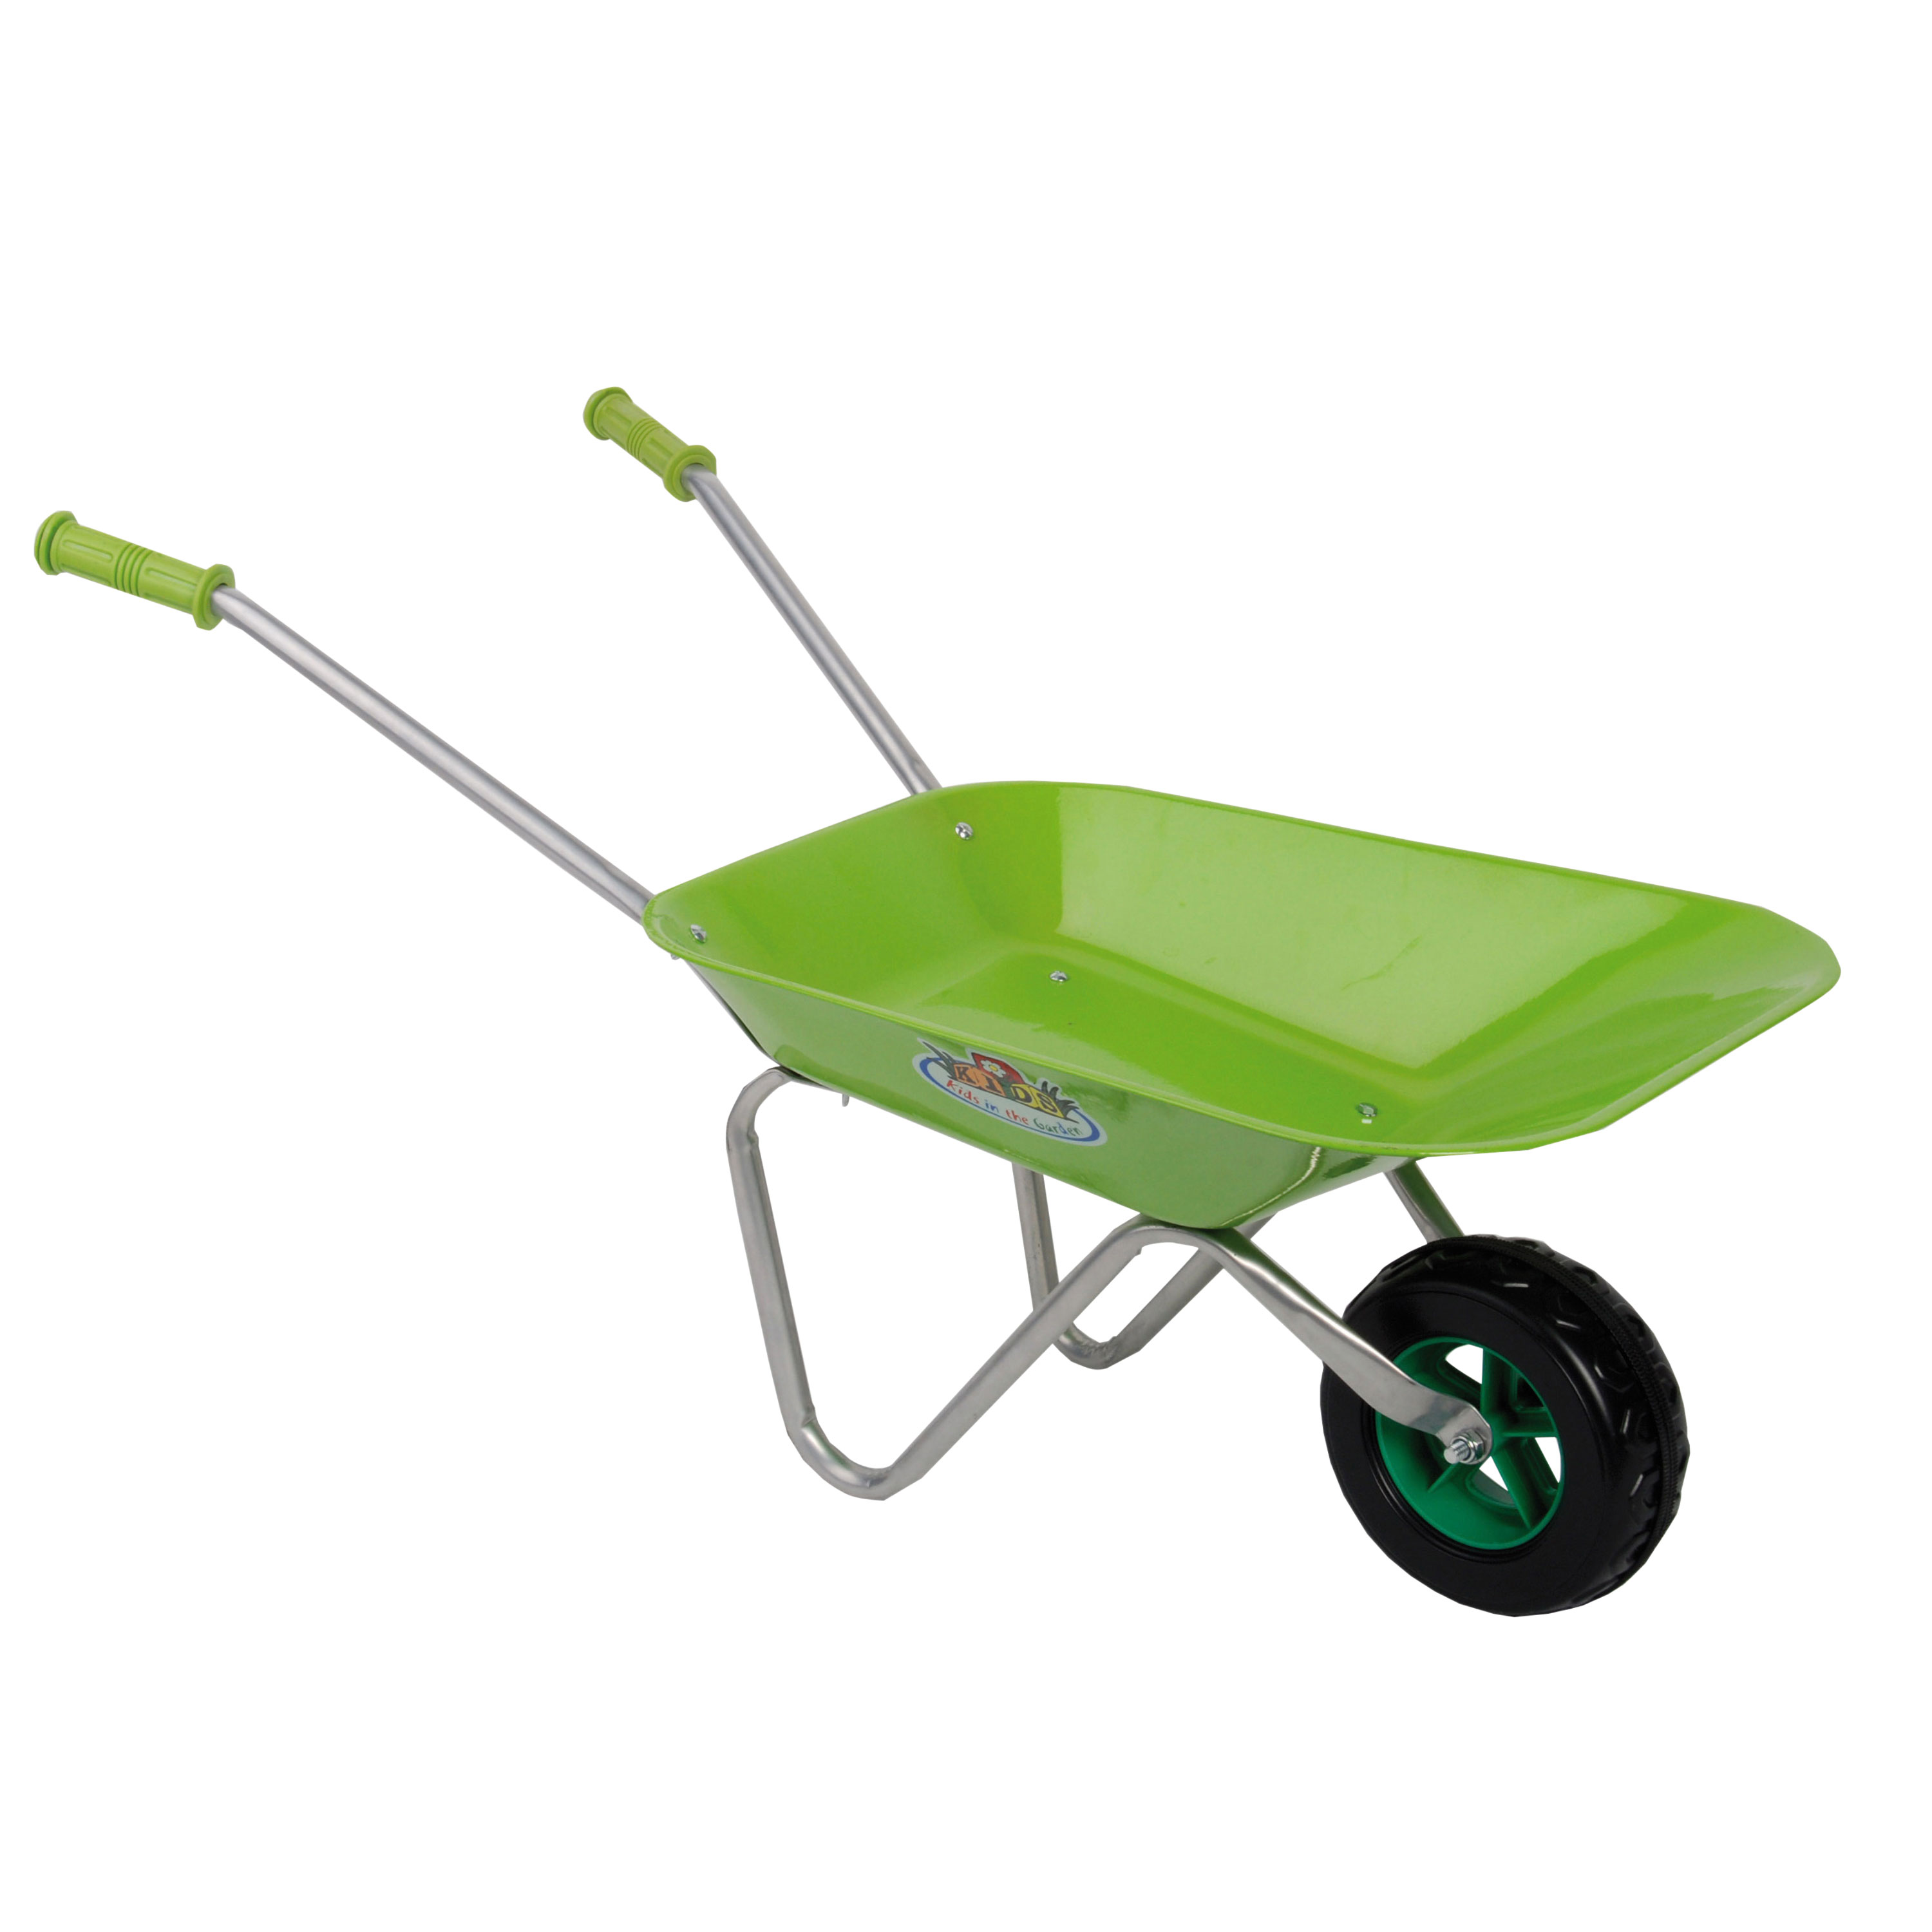 Afbeelding Kinderkruiwagen met metalen bak groen door Haxo.nl